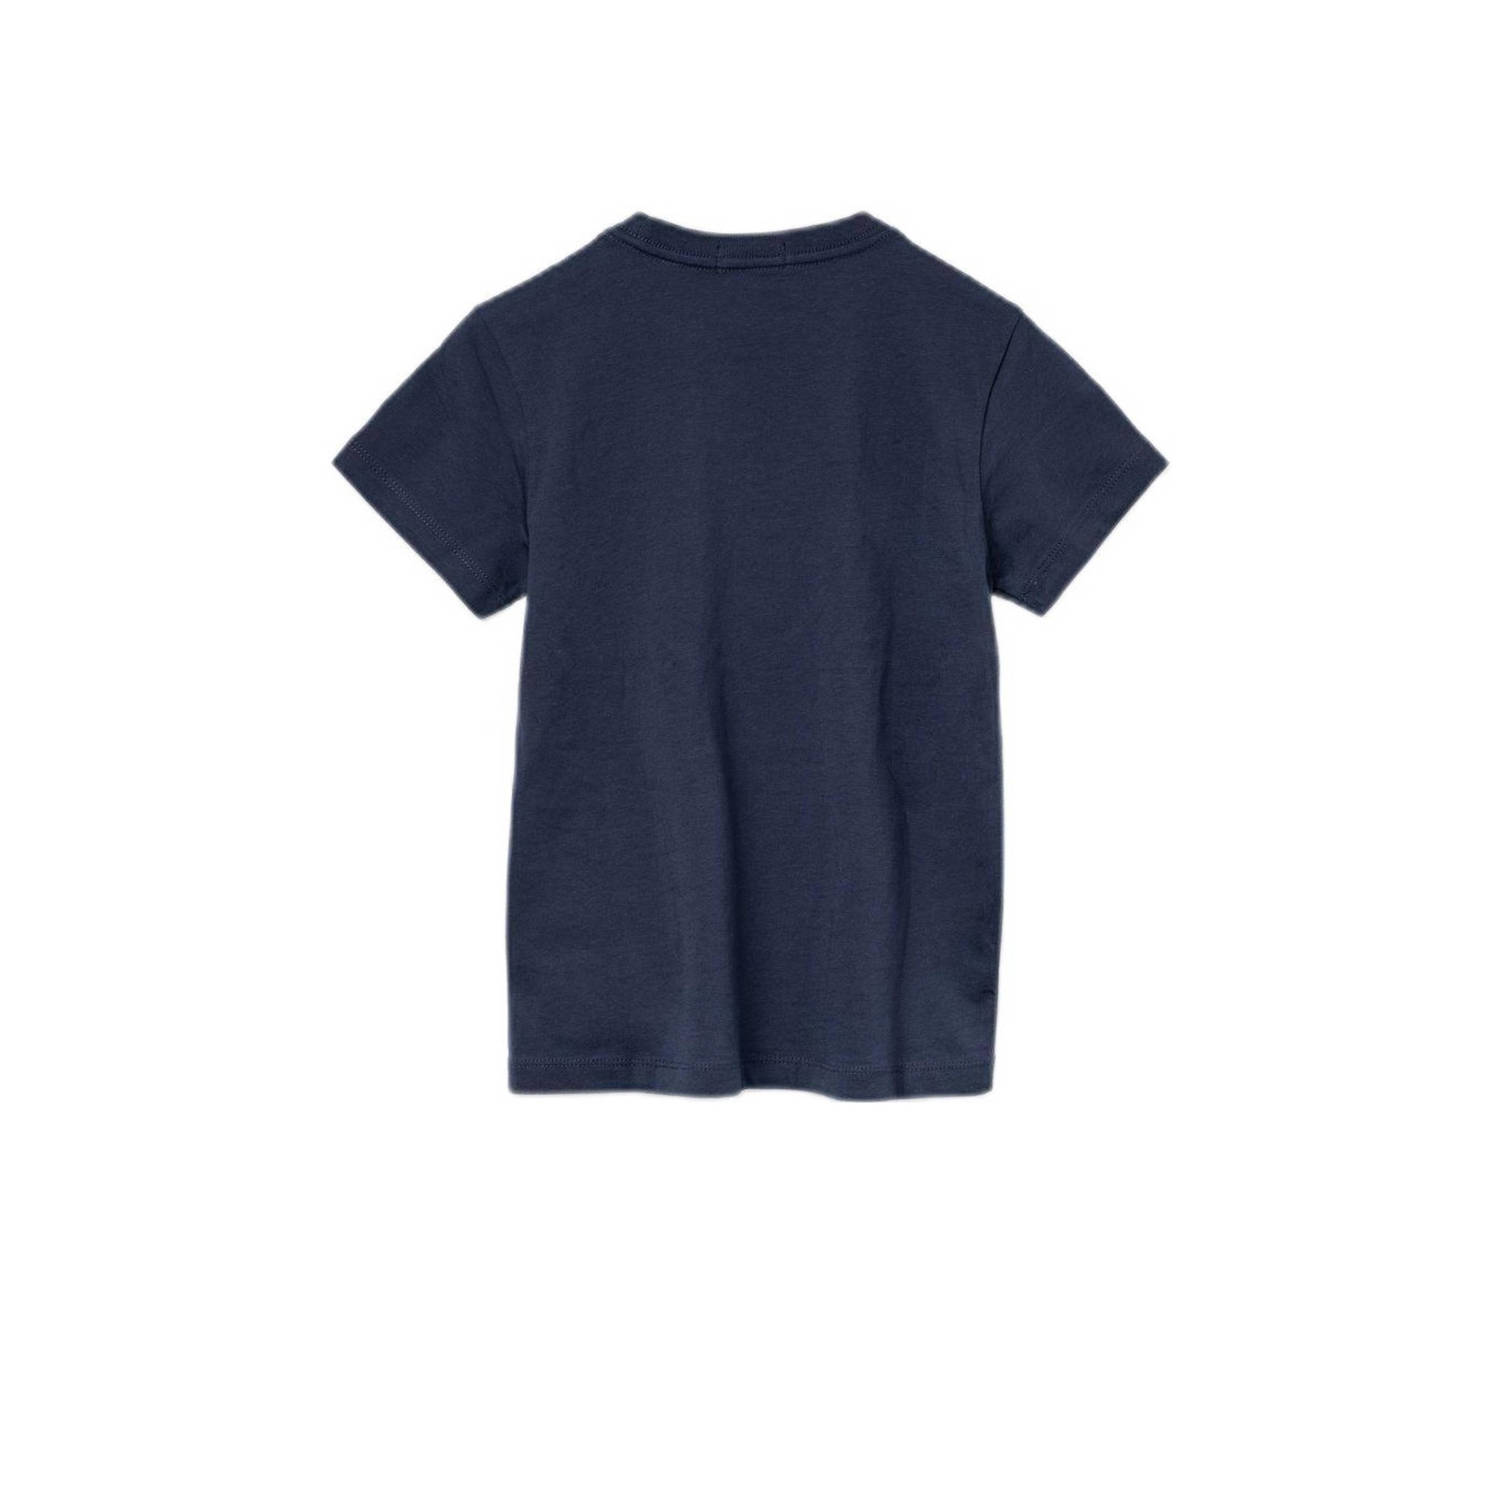 REPLAY T-shirt met logo donkerblauw